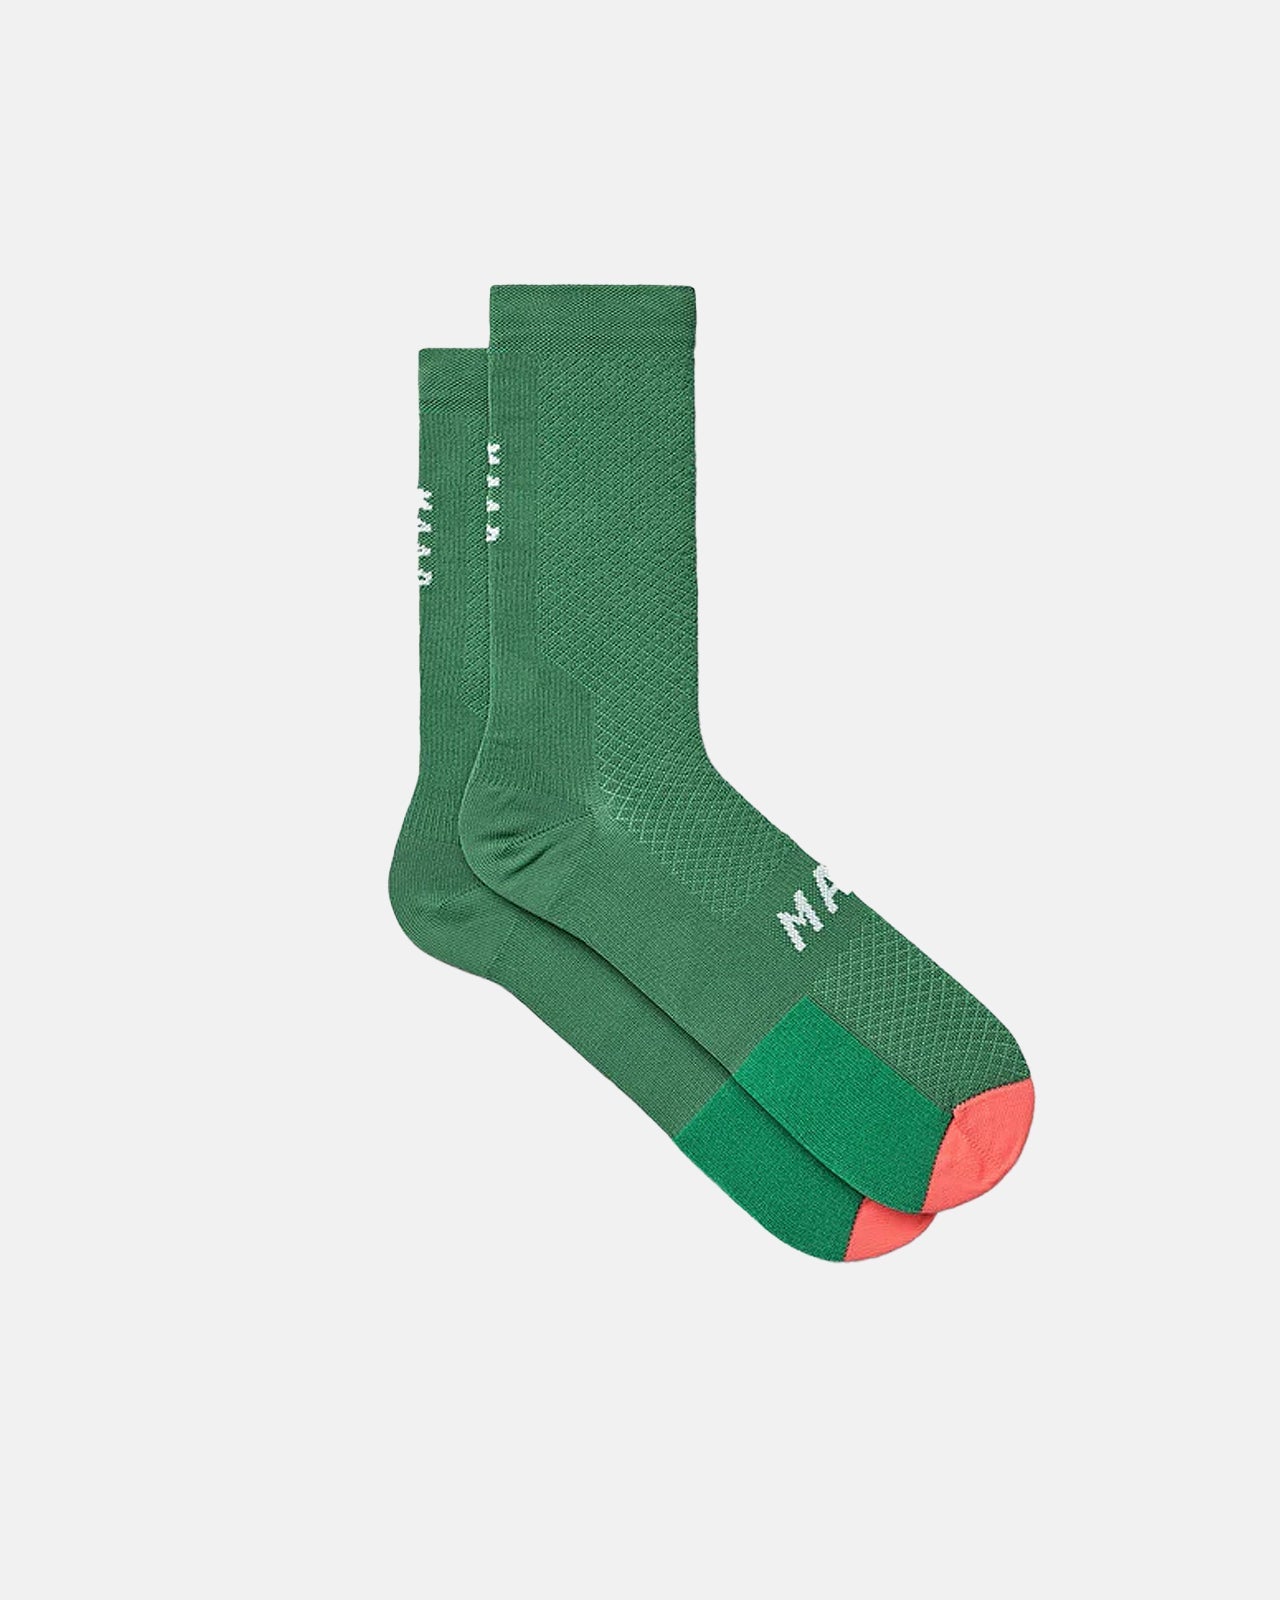 Flow Sock - Verdant Green